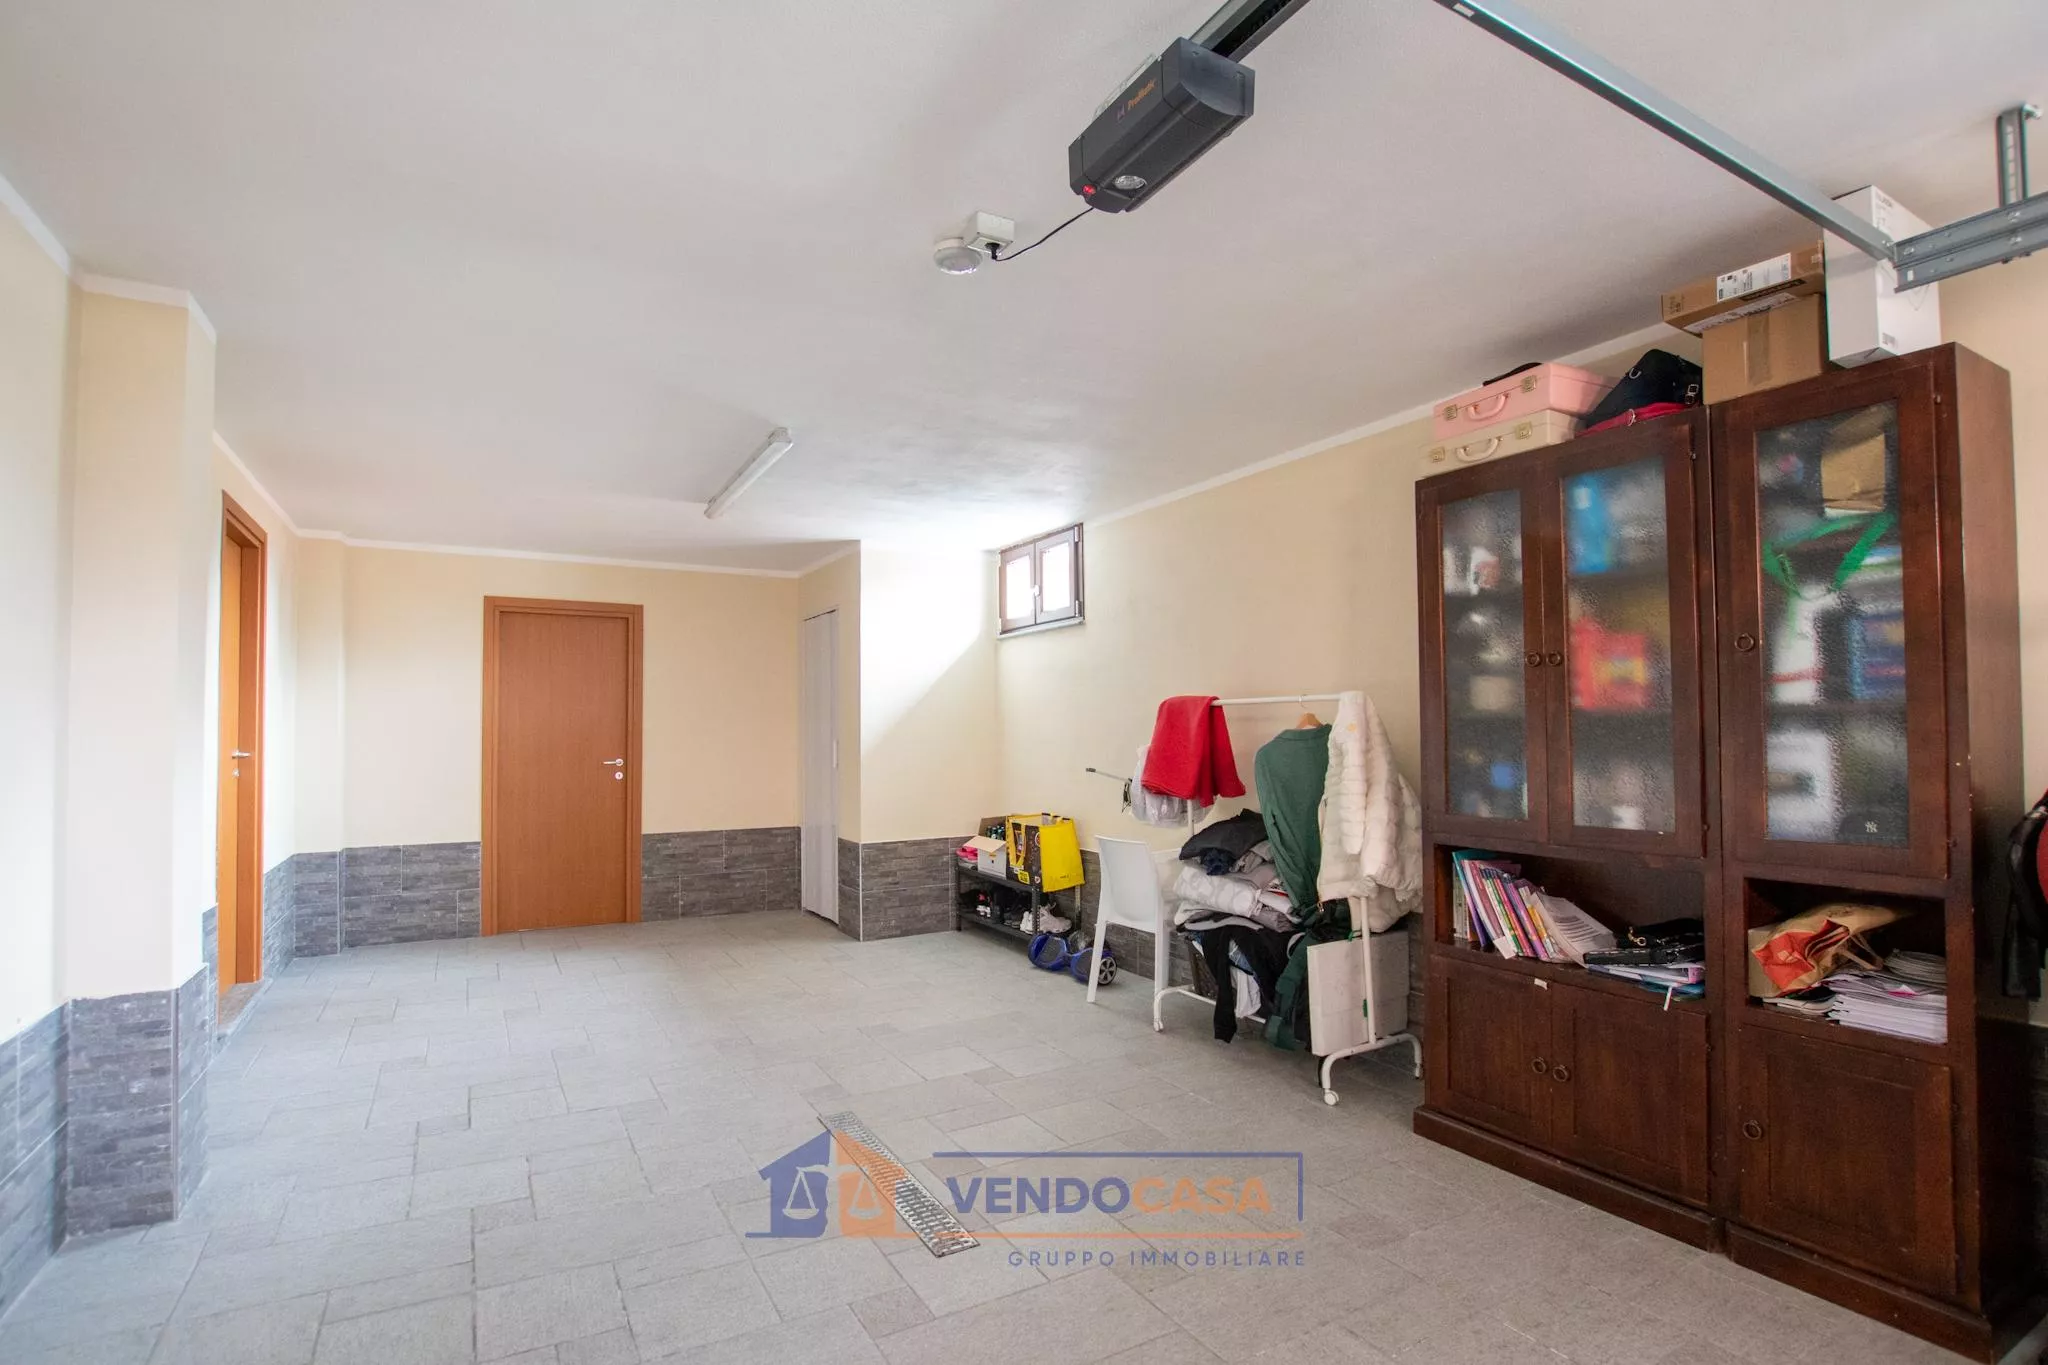 Immagine per Casa Indipendente in vendita a Asti corso Stazione Di Portacomaro 52